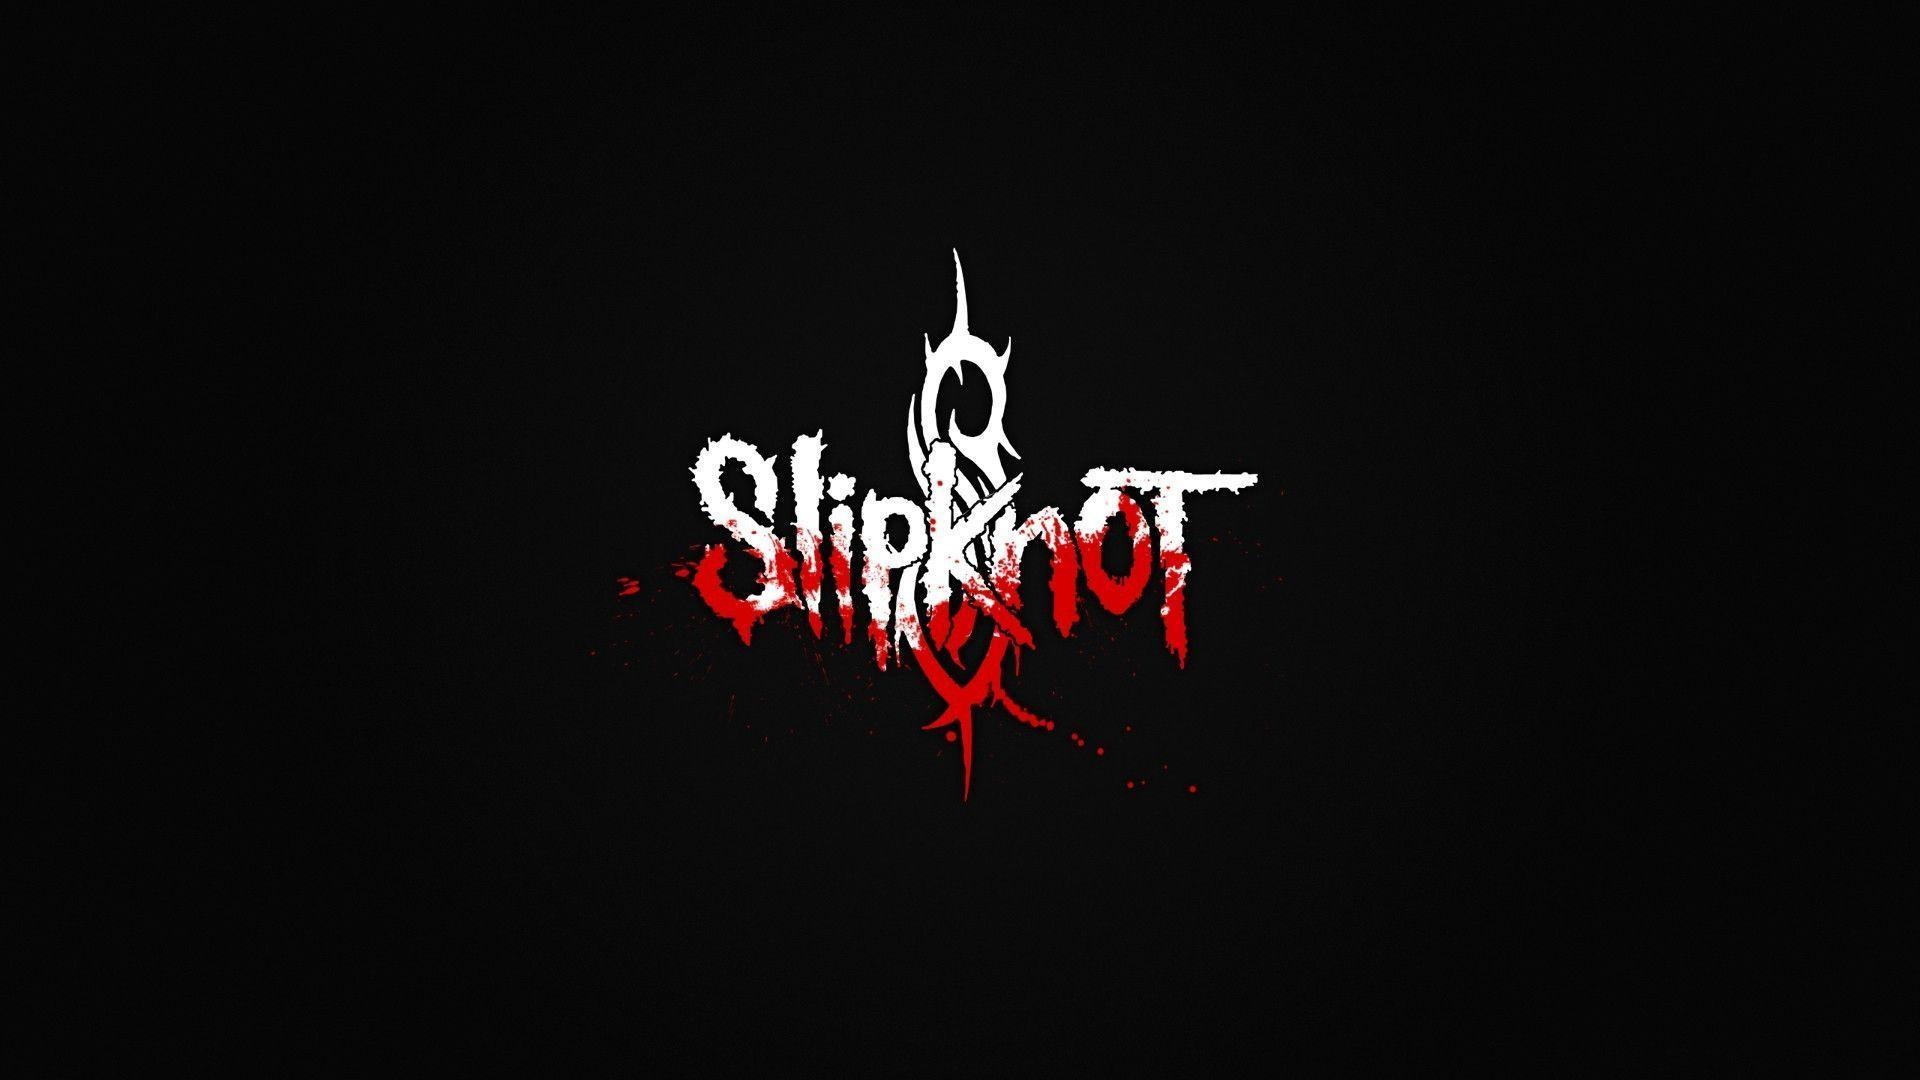 Slipknot Logo Wallpaper. Music band in 2019